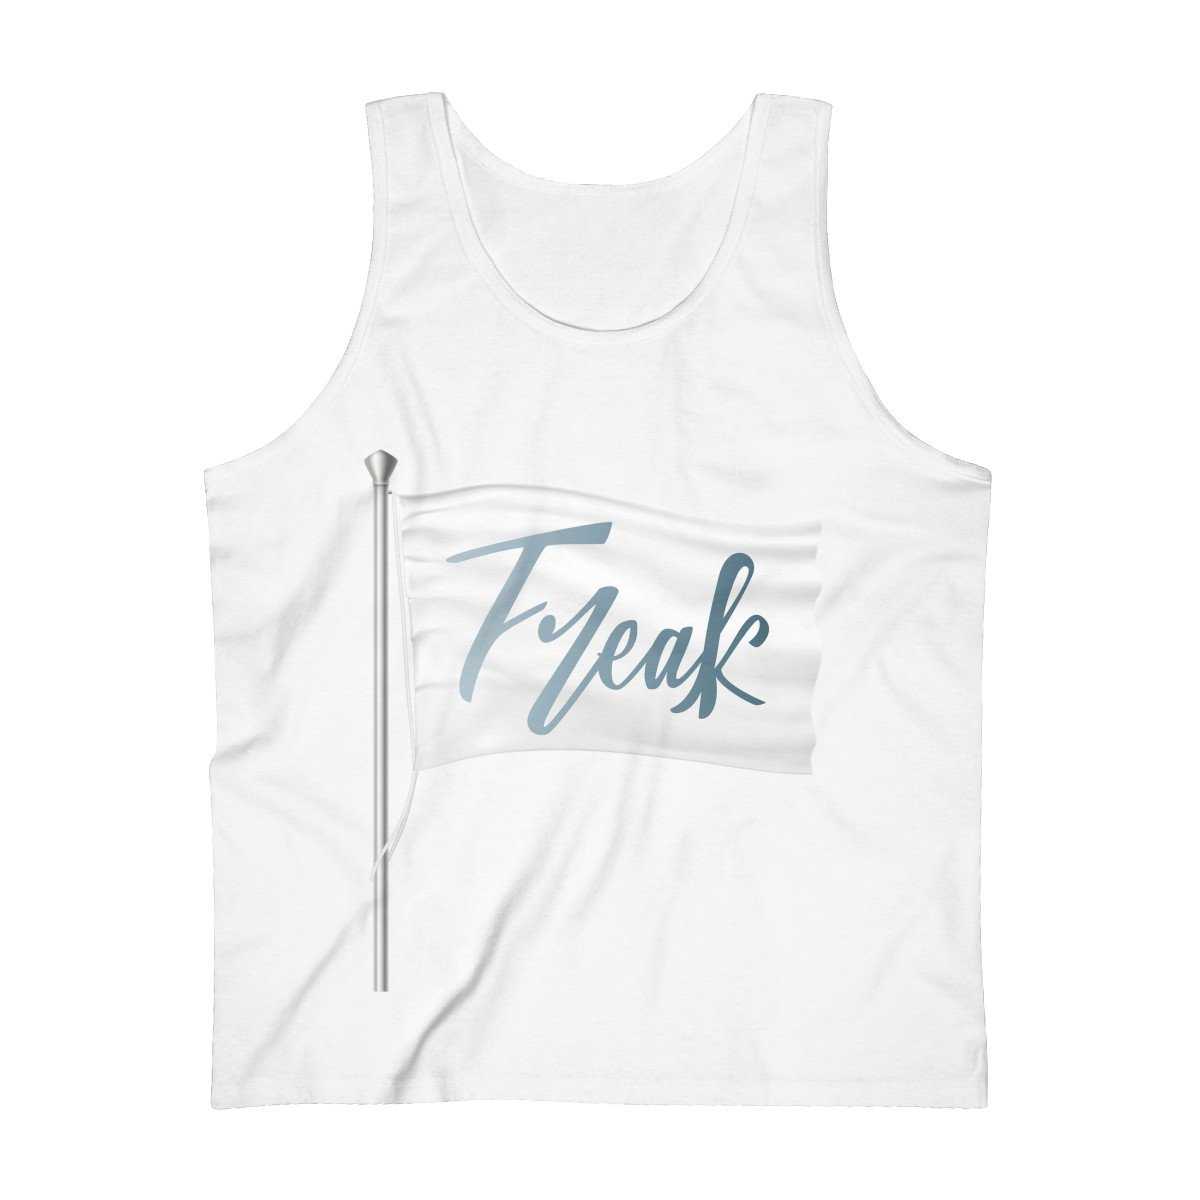 Men's Blue Freak Flag Cotton Tank Top - shopcontrabrands.com